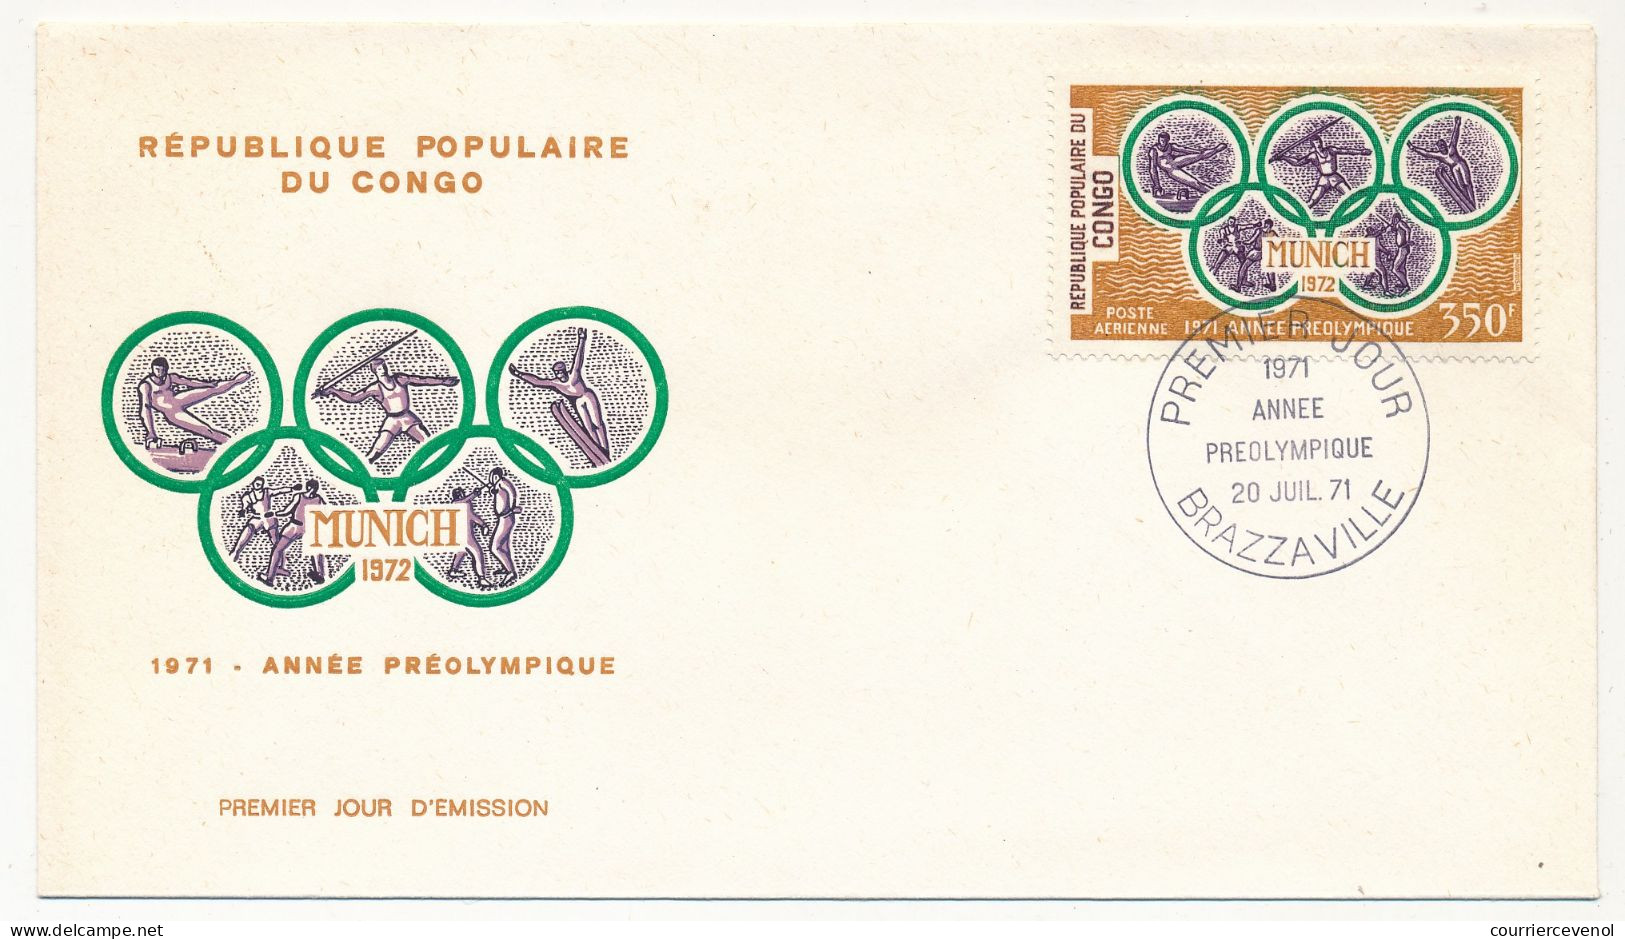 Rep Pop Du CONGO - 2 Env FDC - Munich 1972 / 1971 Année Préolympique (Poste Aérienne) - Brazzaville - 20 Juillet 1971 - FDC